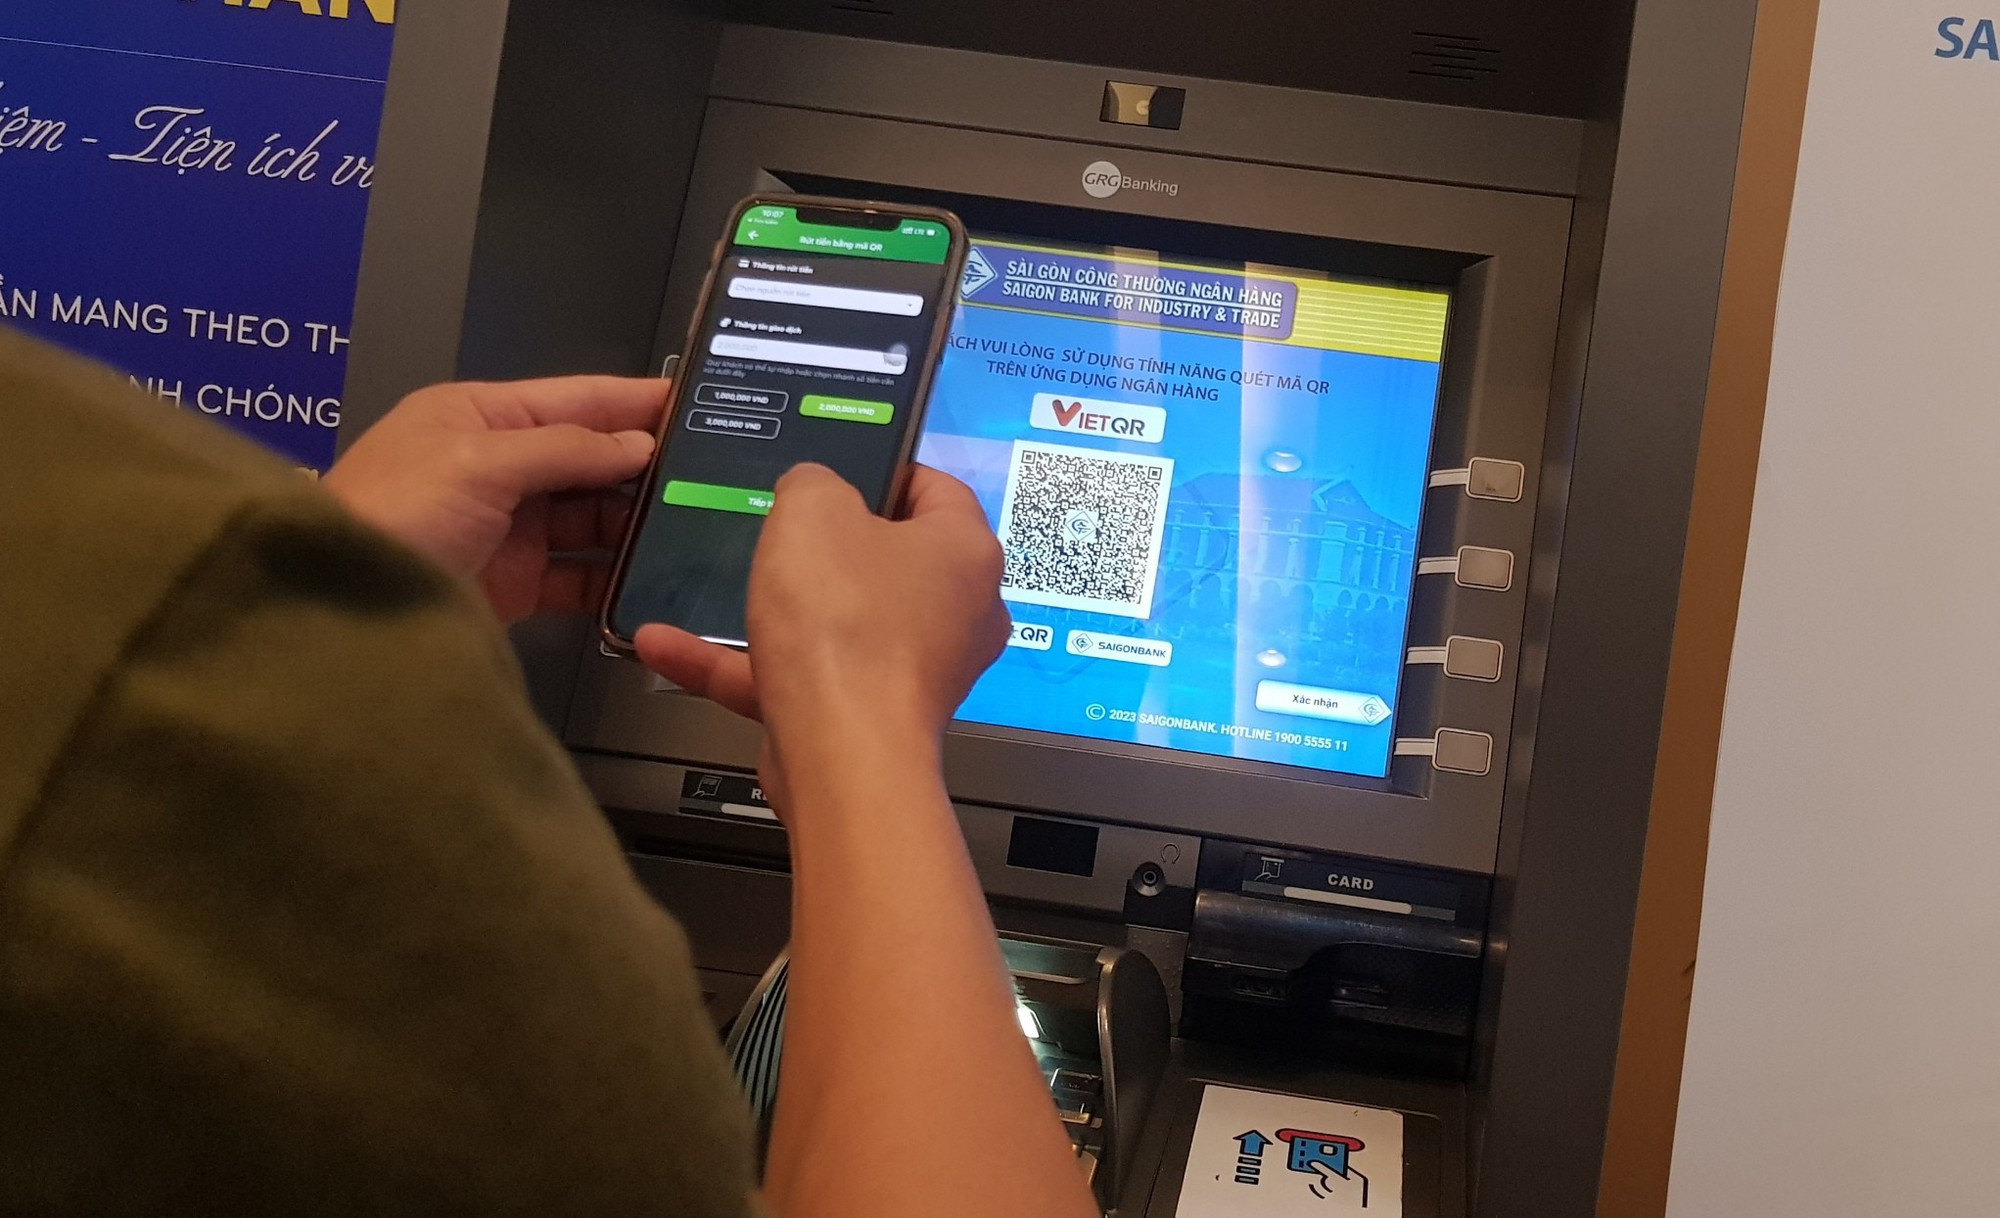 Chính thức rút tiền liên ngân hàng tại ATM bằng quét mã VietQR - Ảnh 2.